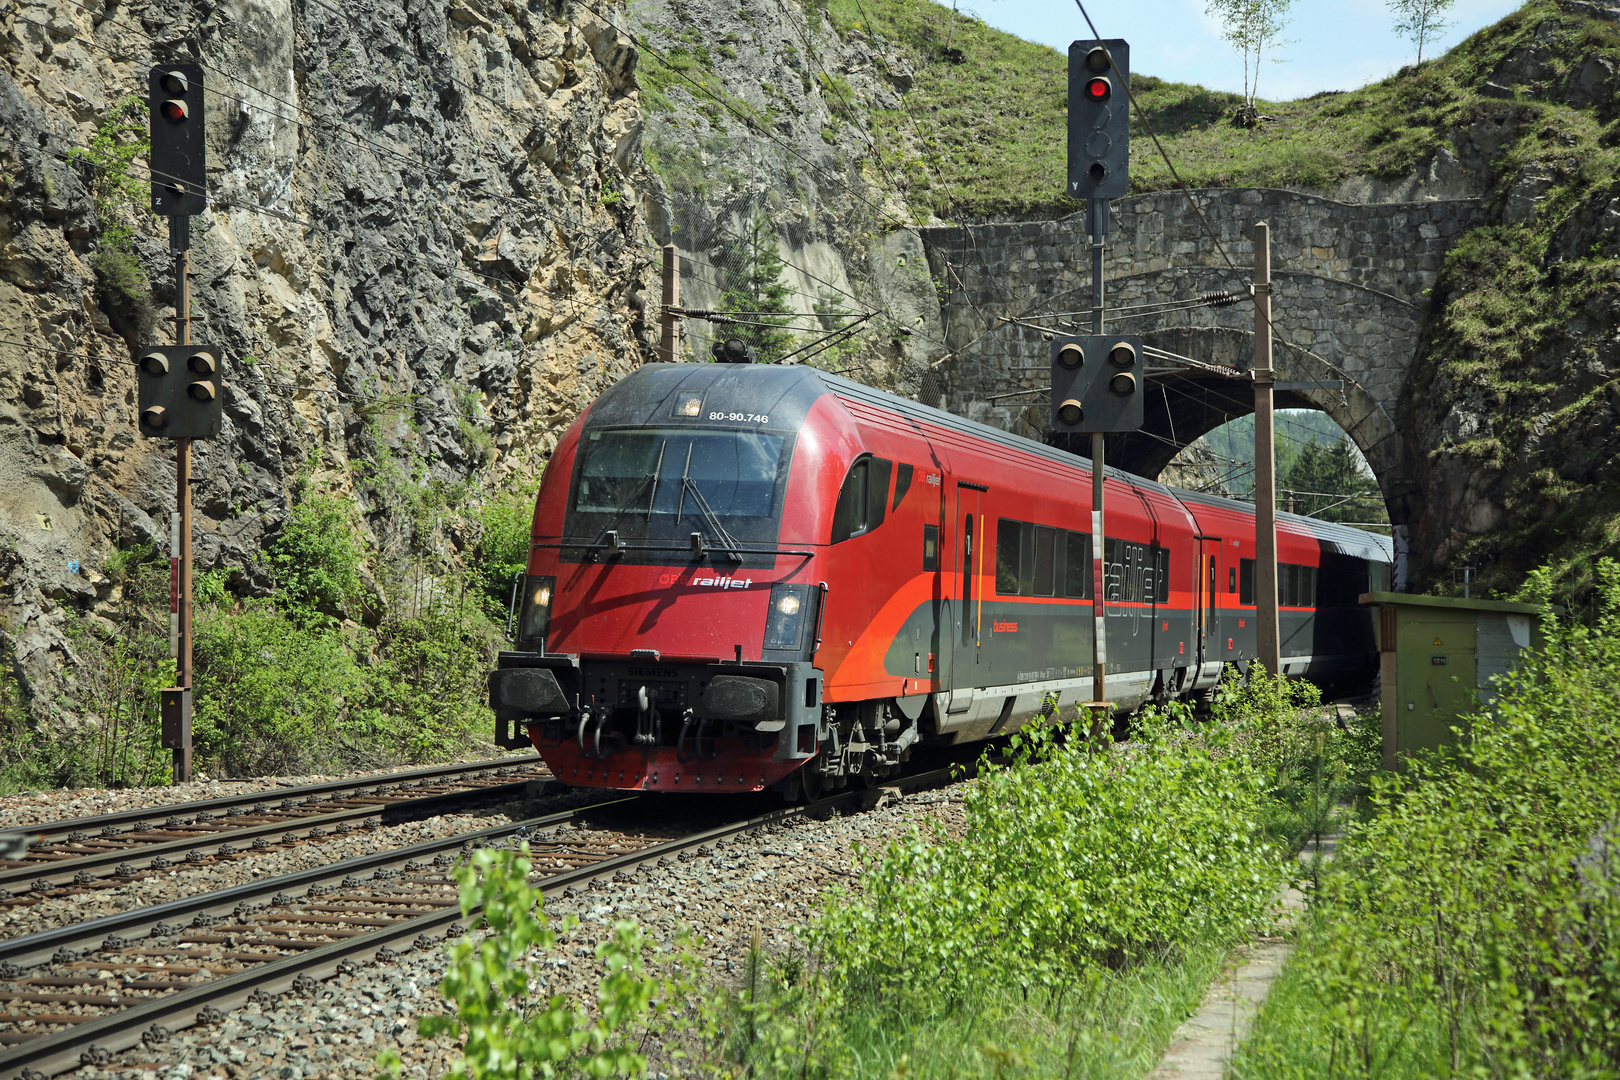 ÖBB - railjet 80-90.746